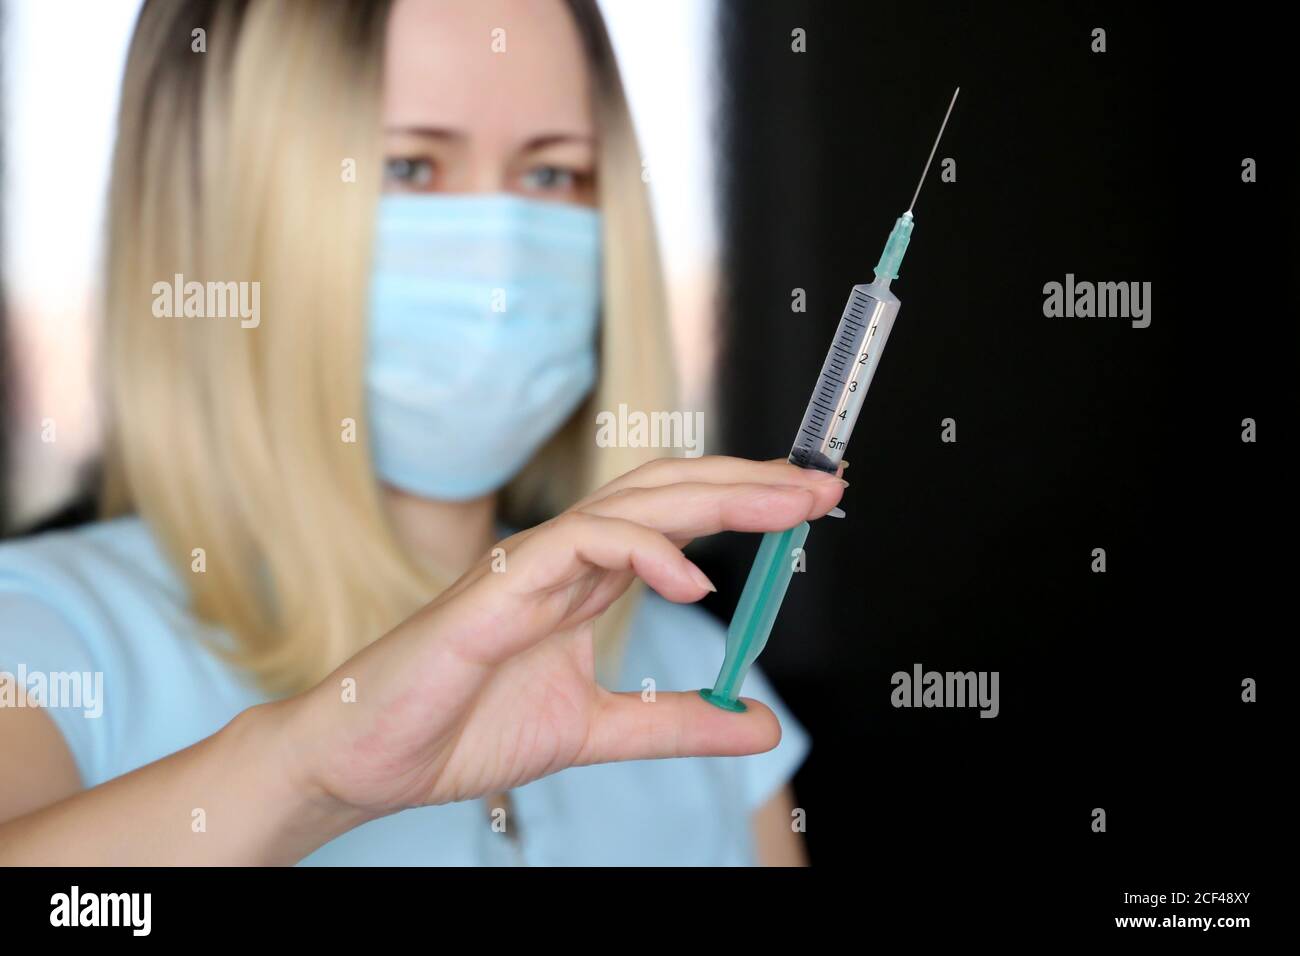 Femme avec seringue, médecin dans un masque médical se préparant à l'injection. Concept de vaccination pendant la pandémie de Covid-19 Banque D'Images